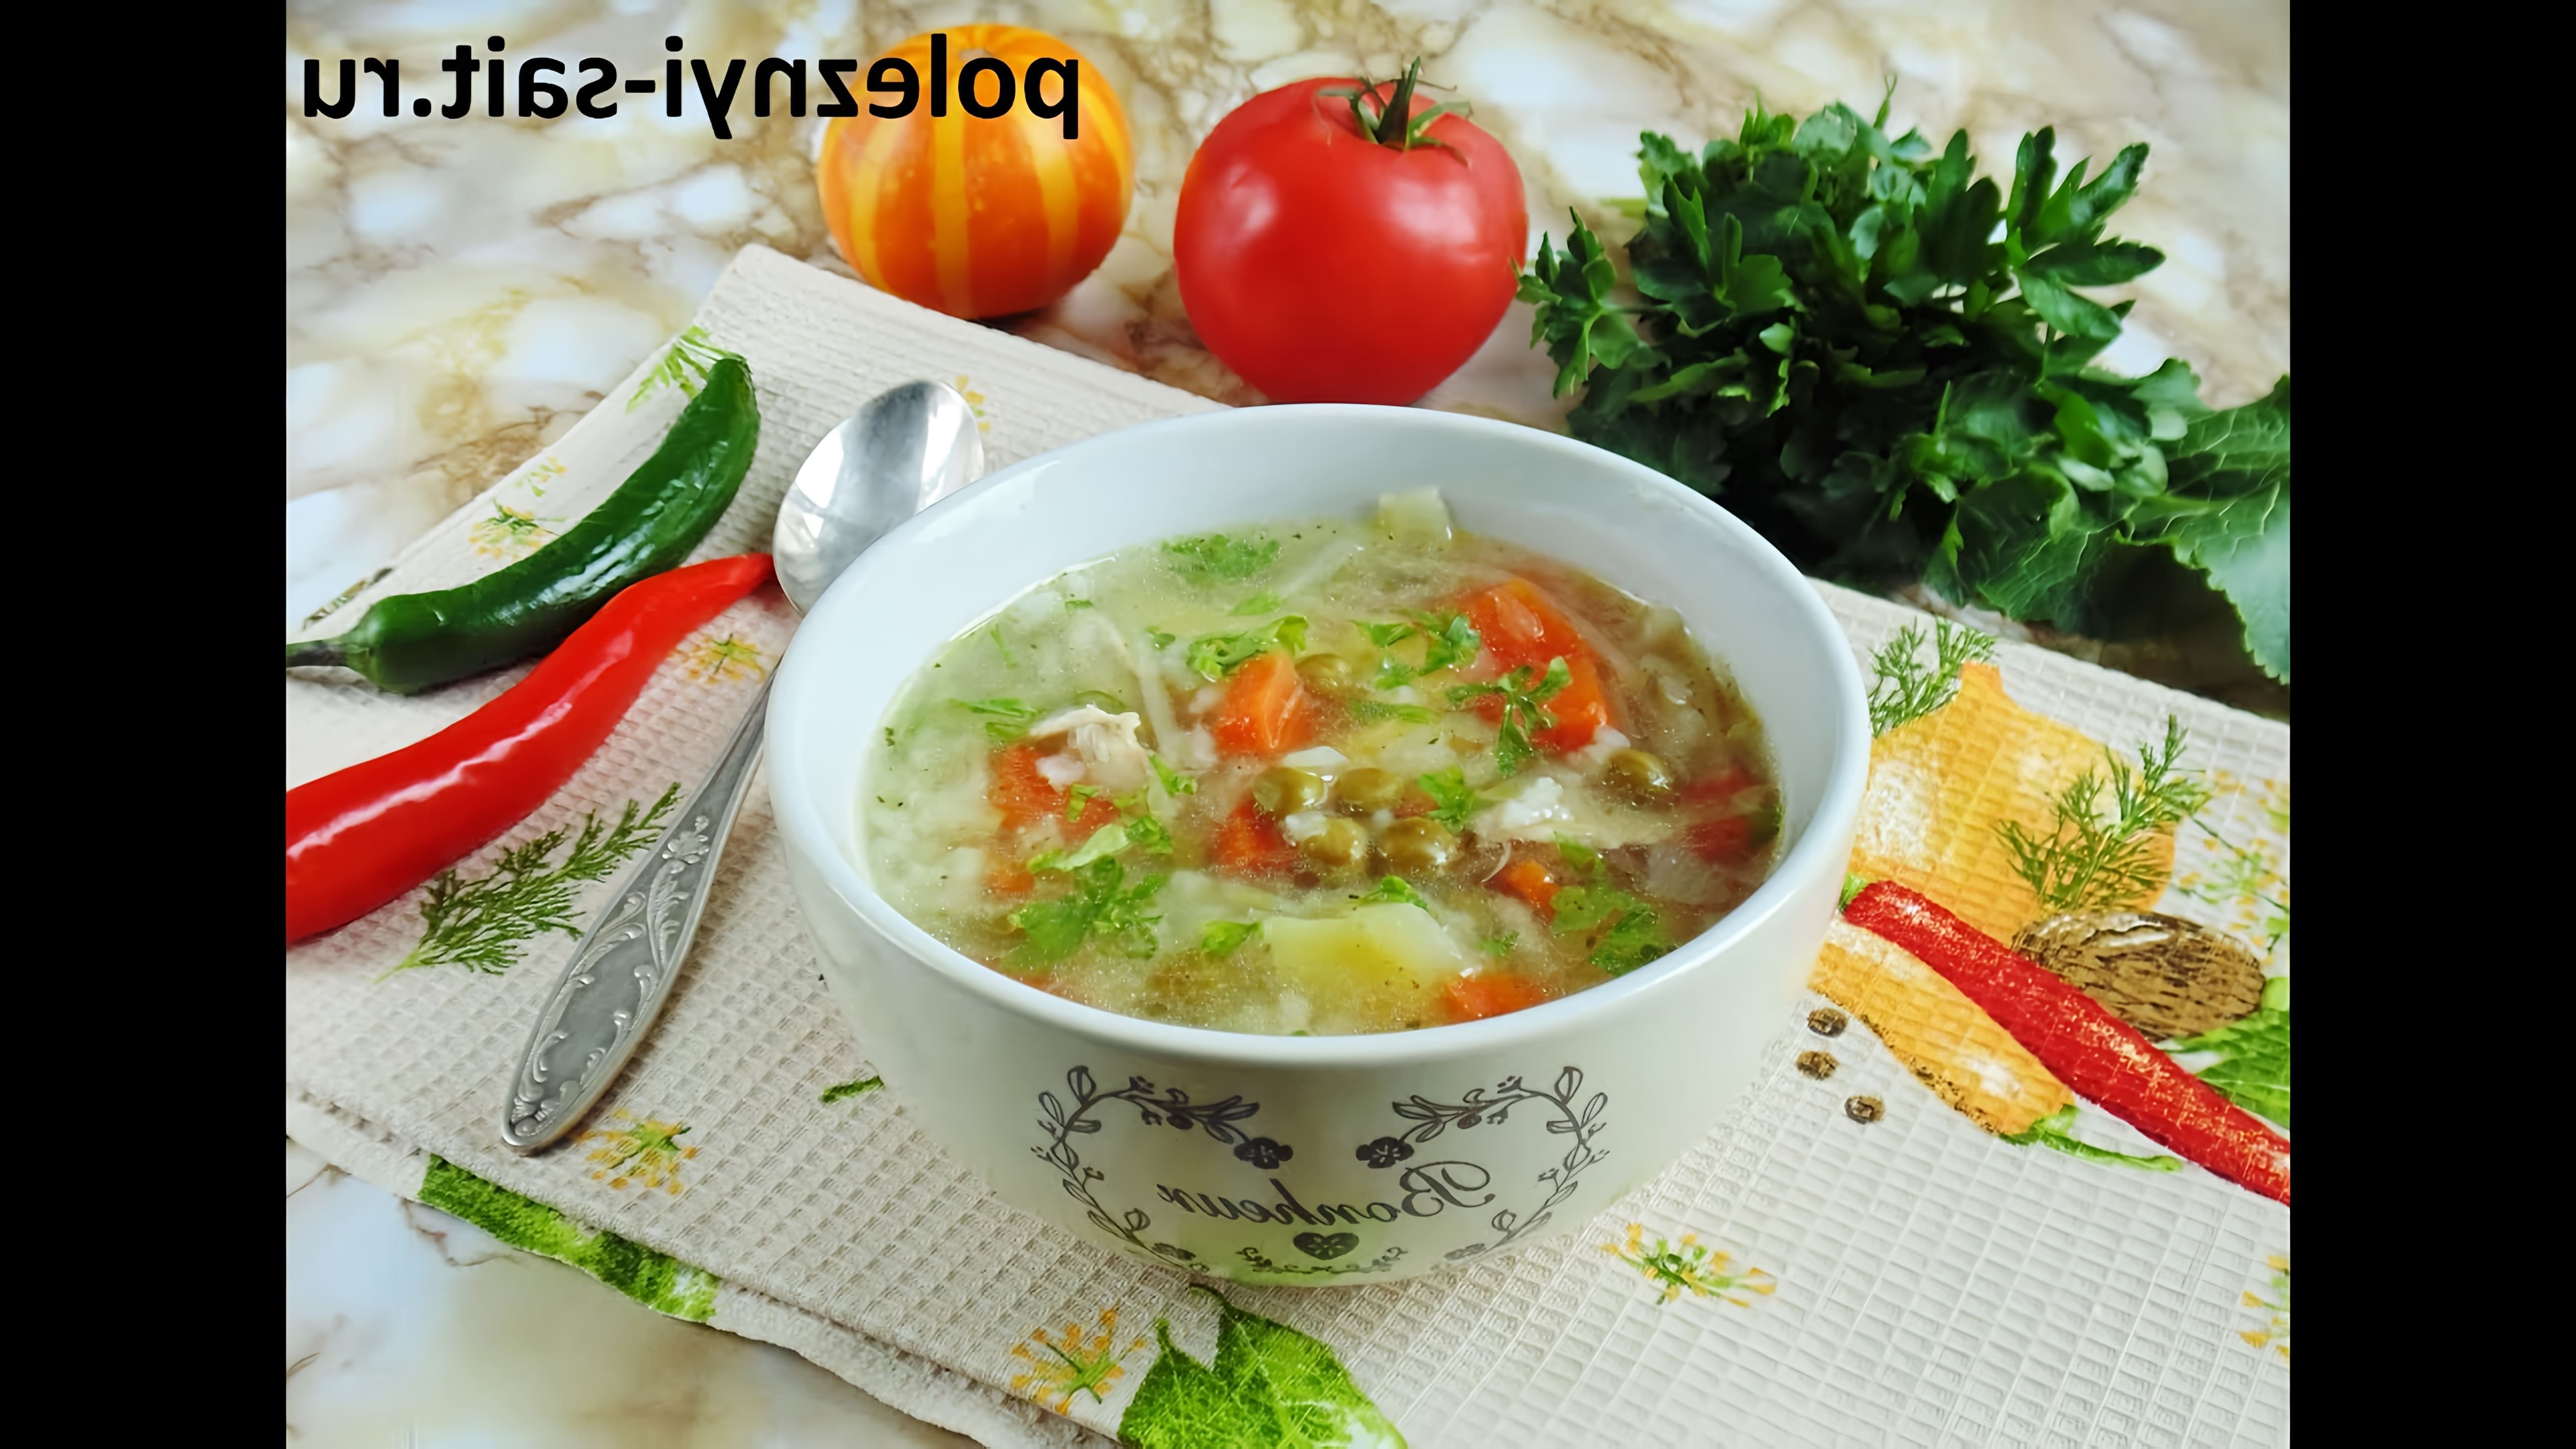 "Овощной суп с рисом" - это вкусное и полезное блюдо, которое можно приготовить в домашних условиях